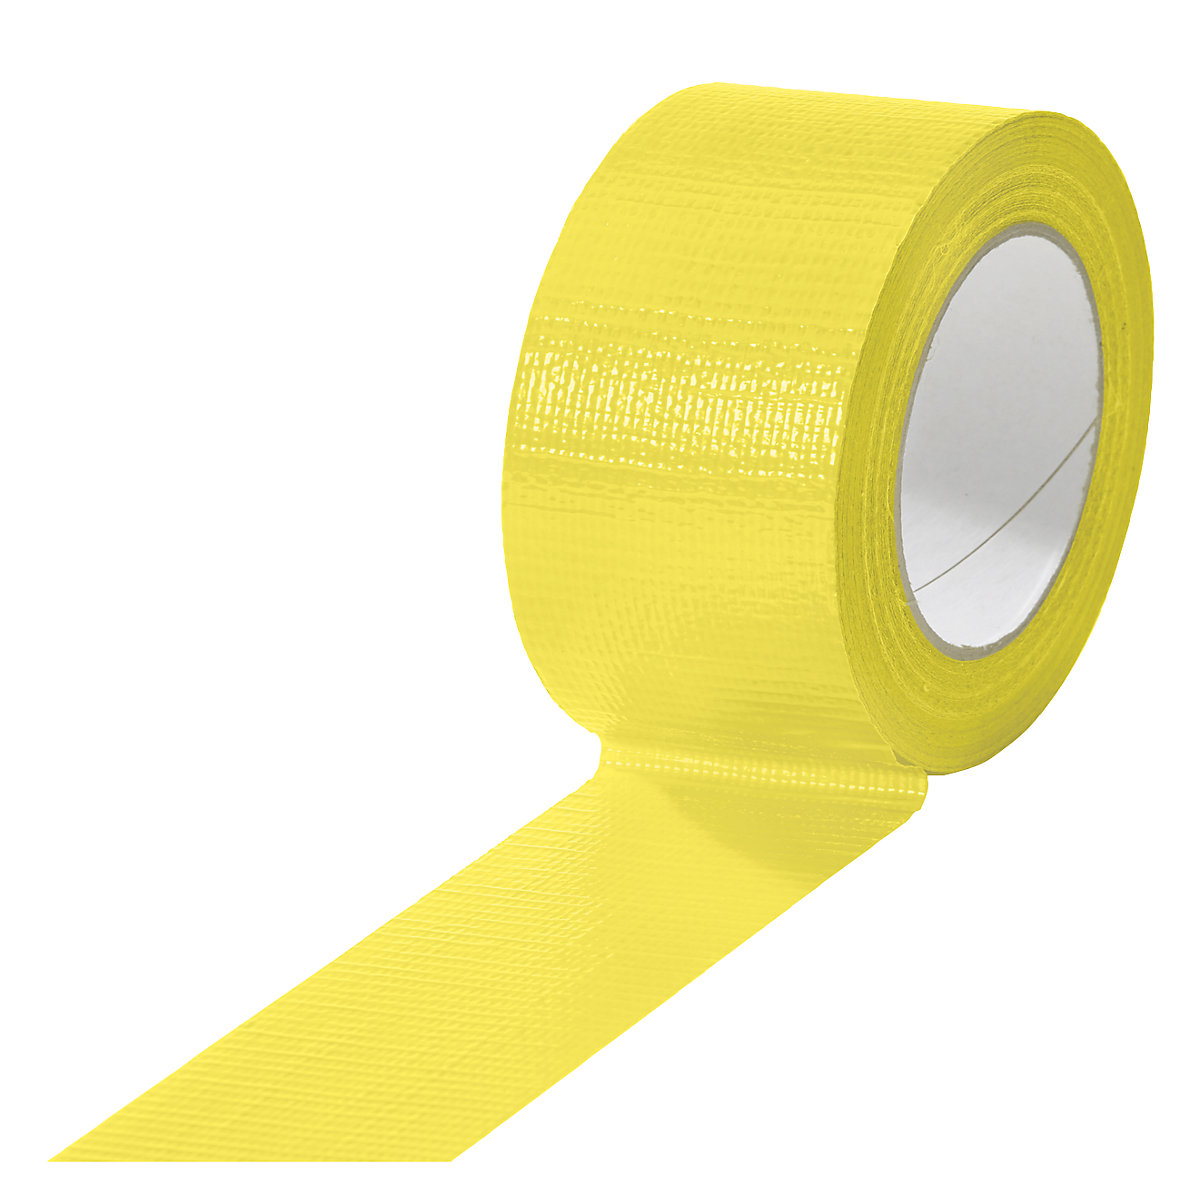 Cinta de tejido, en diferentes colores, UE 18 rollos, amarillo, anchura de cinta 50 mm-7